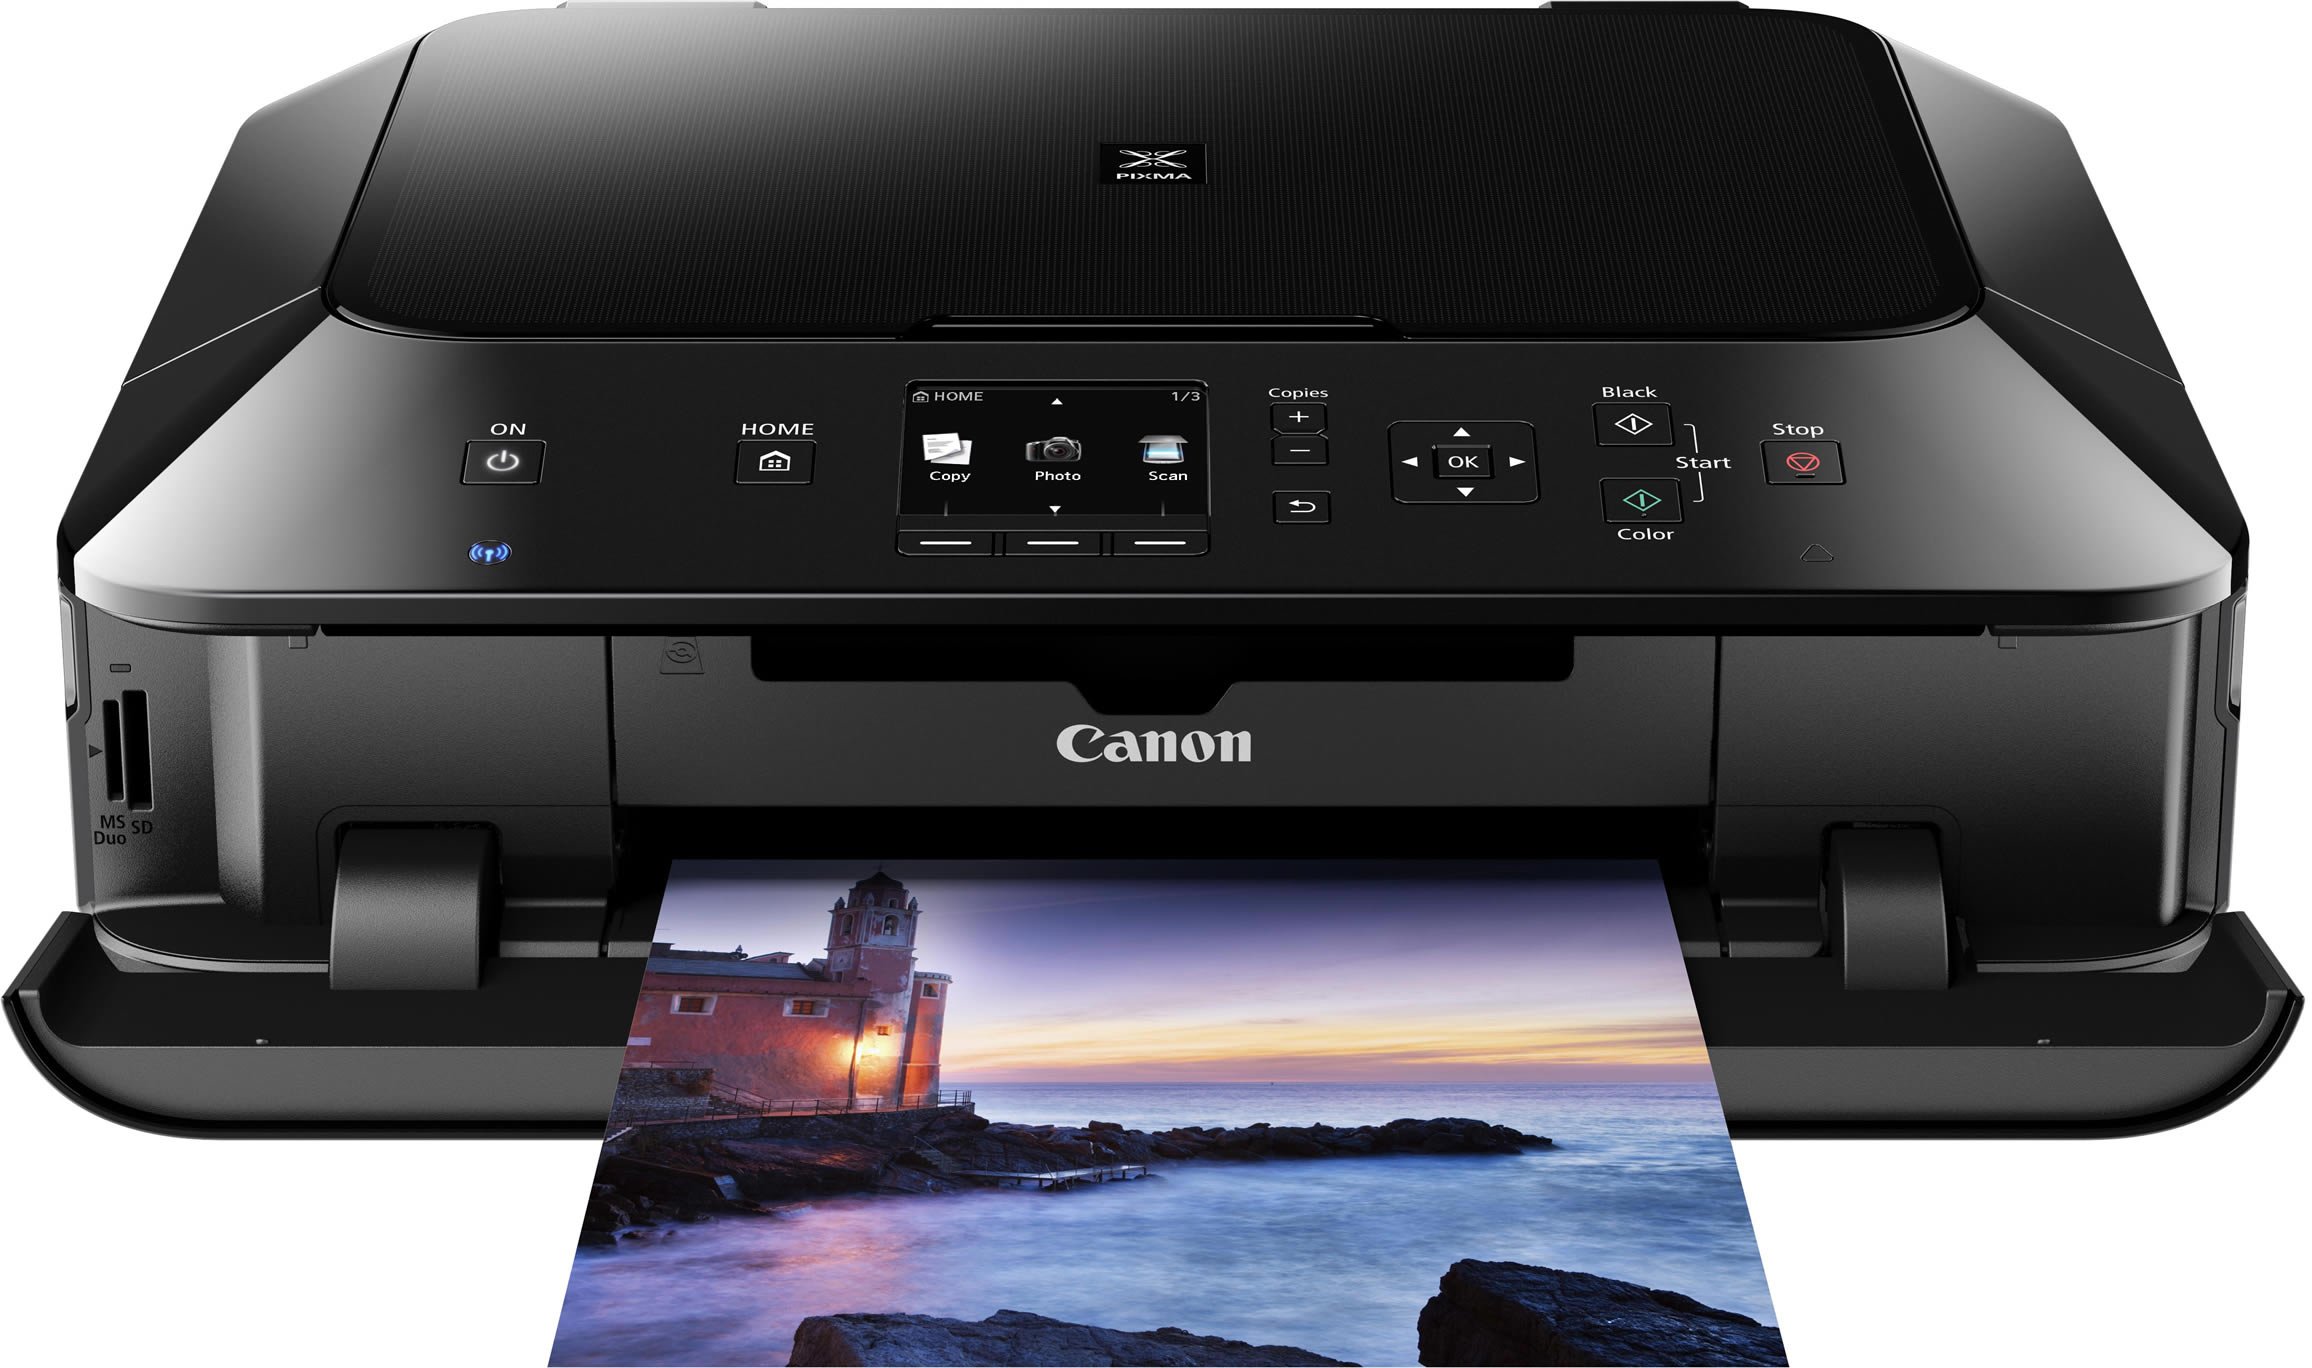 Canon Pixma Printer Series